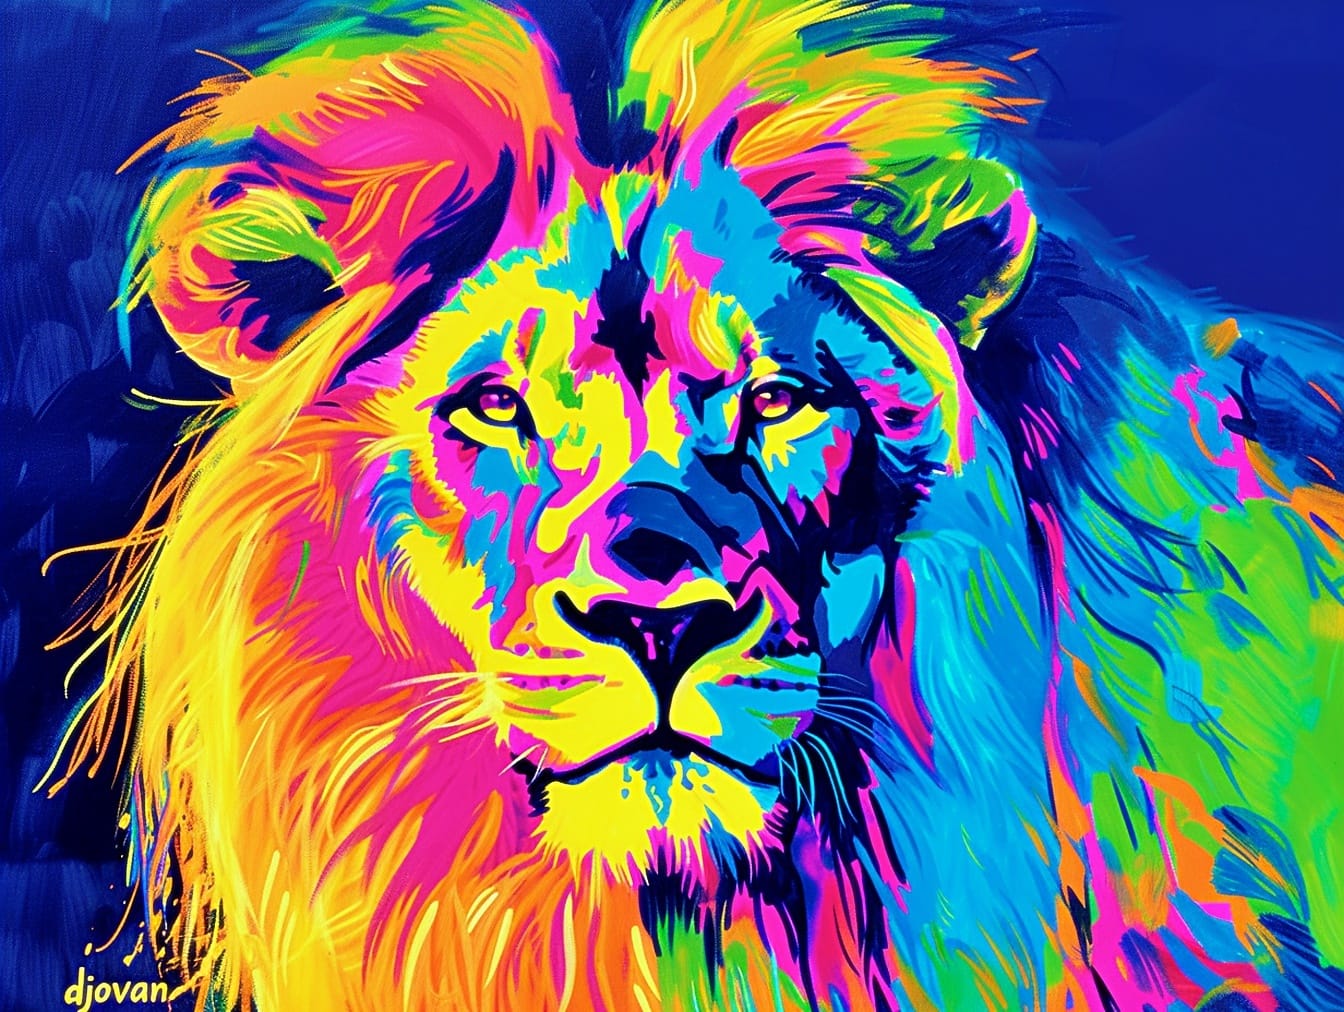 Színes grafika pop art stílusú oroszlán színes sörényével